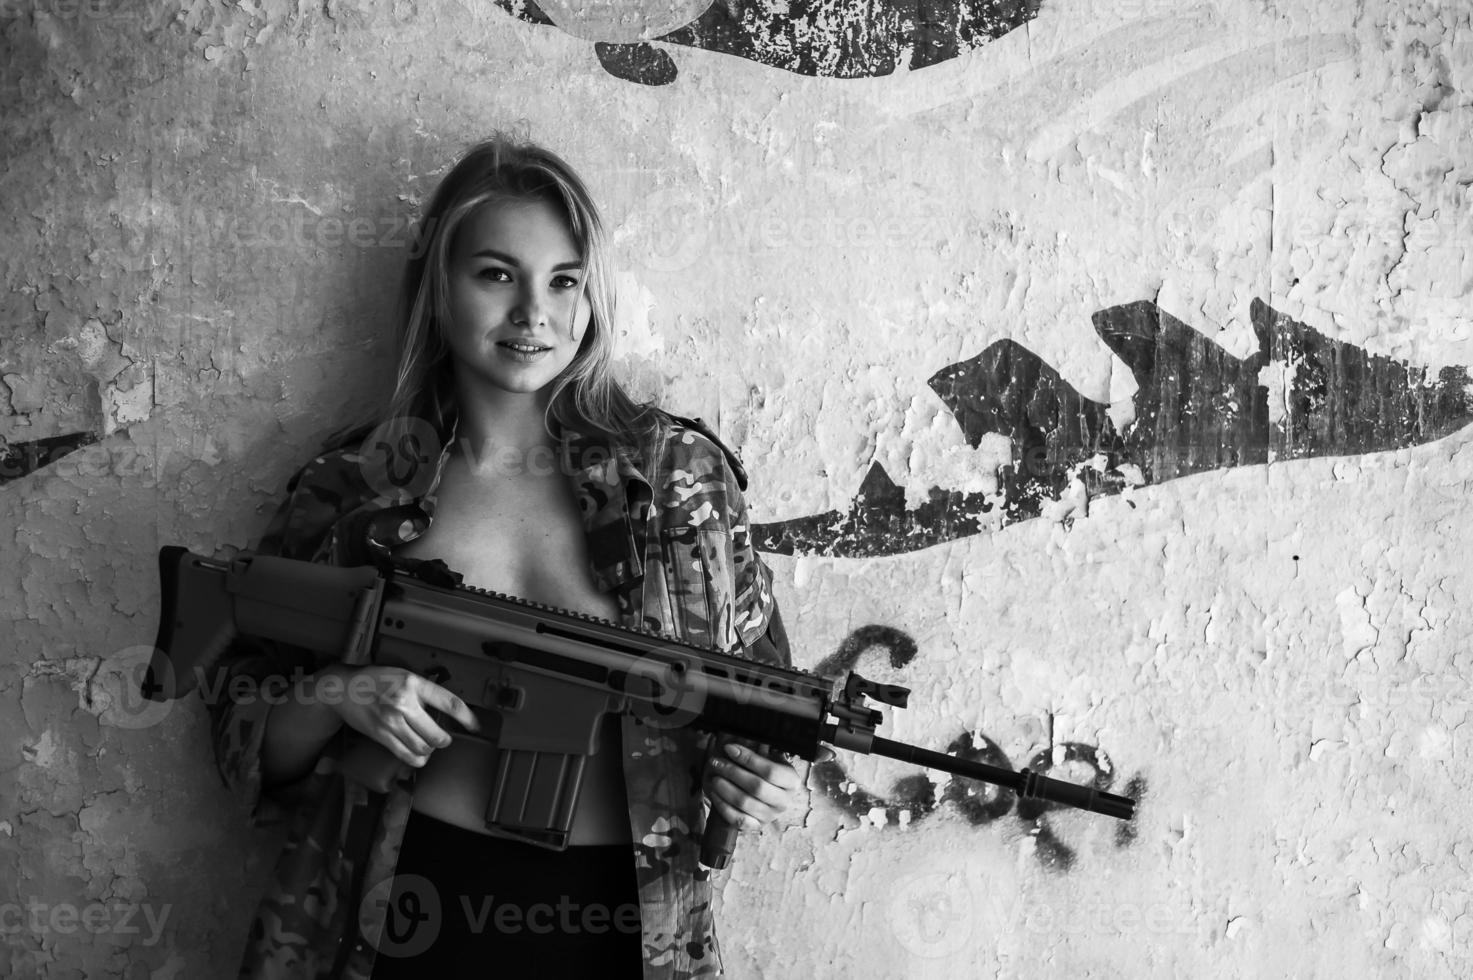 mooi portret van een meisje met een pistool foto